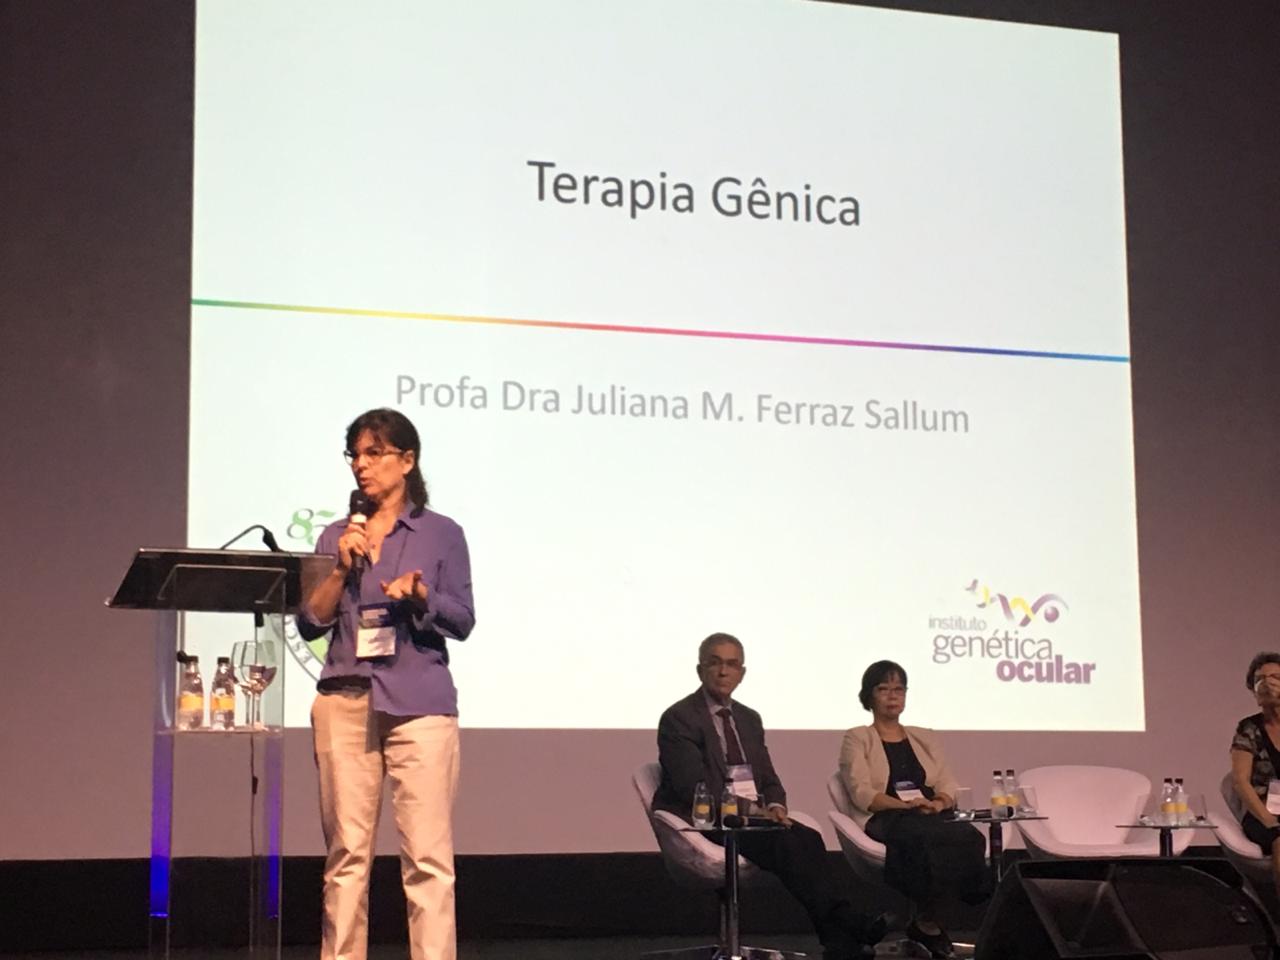 #PraCegoVer foto da Profa. Dra. Juliana Sallum palestrando no palco no evento. Ao fundo há uma projeção com o título "Terapia Gênica"